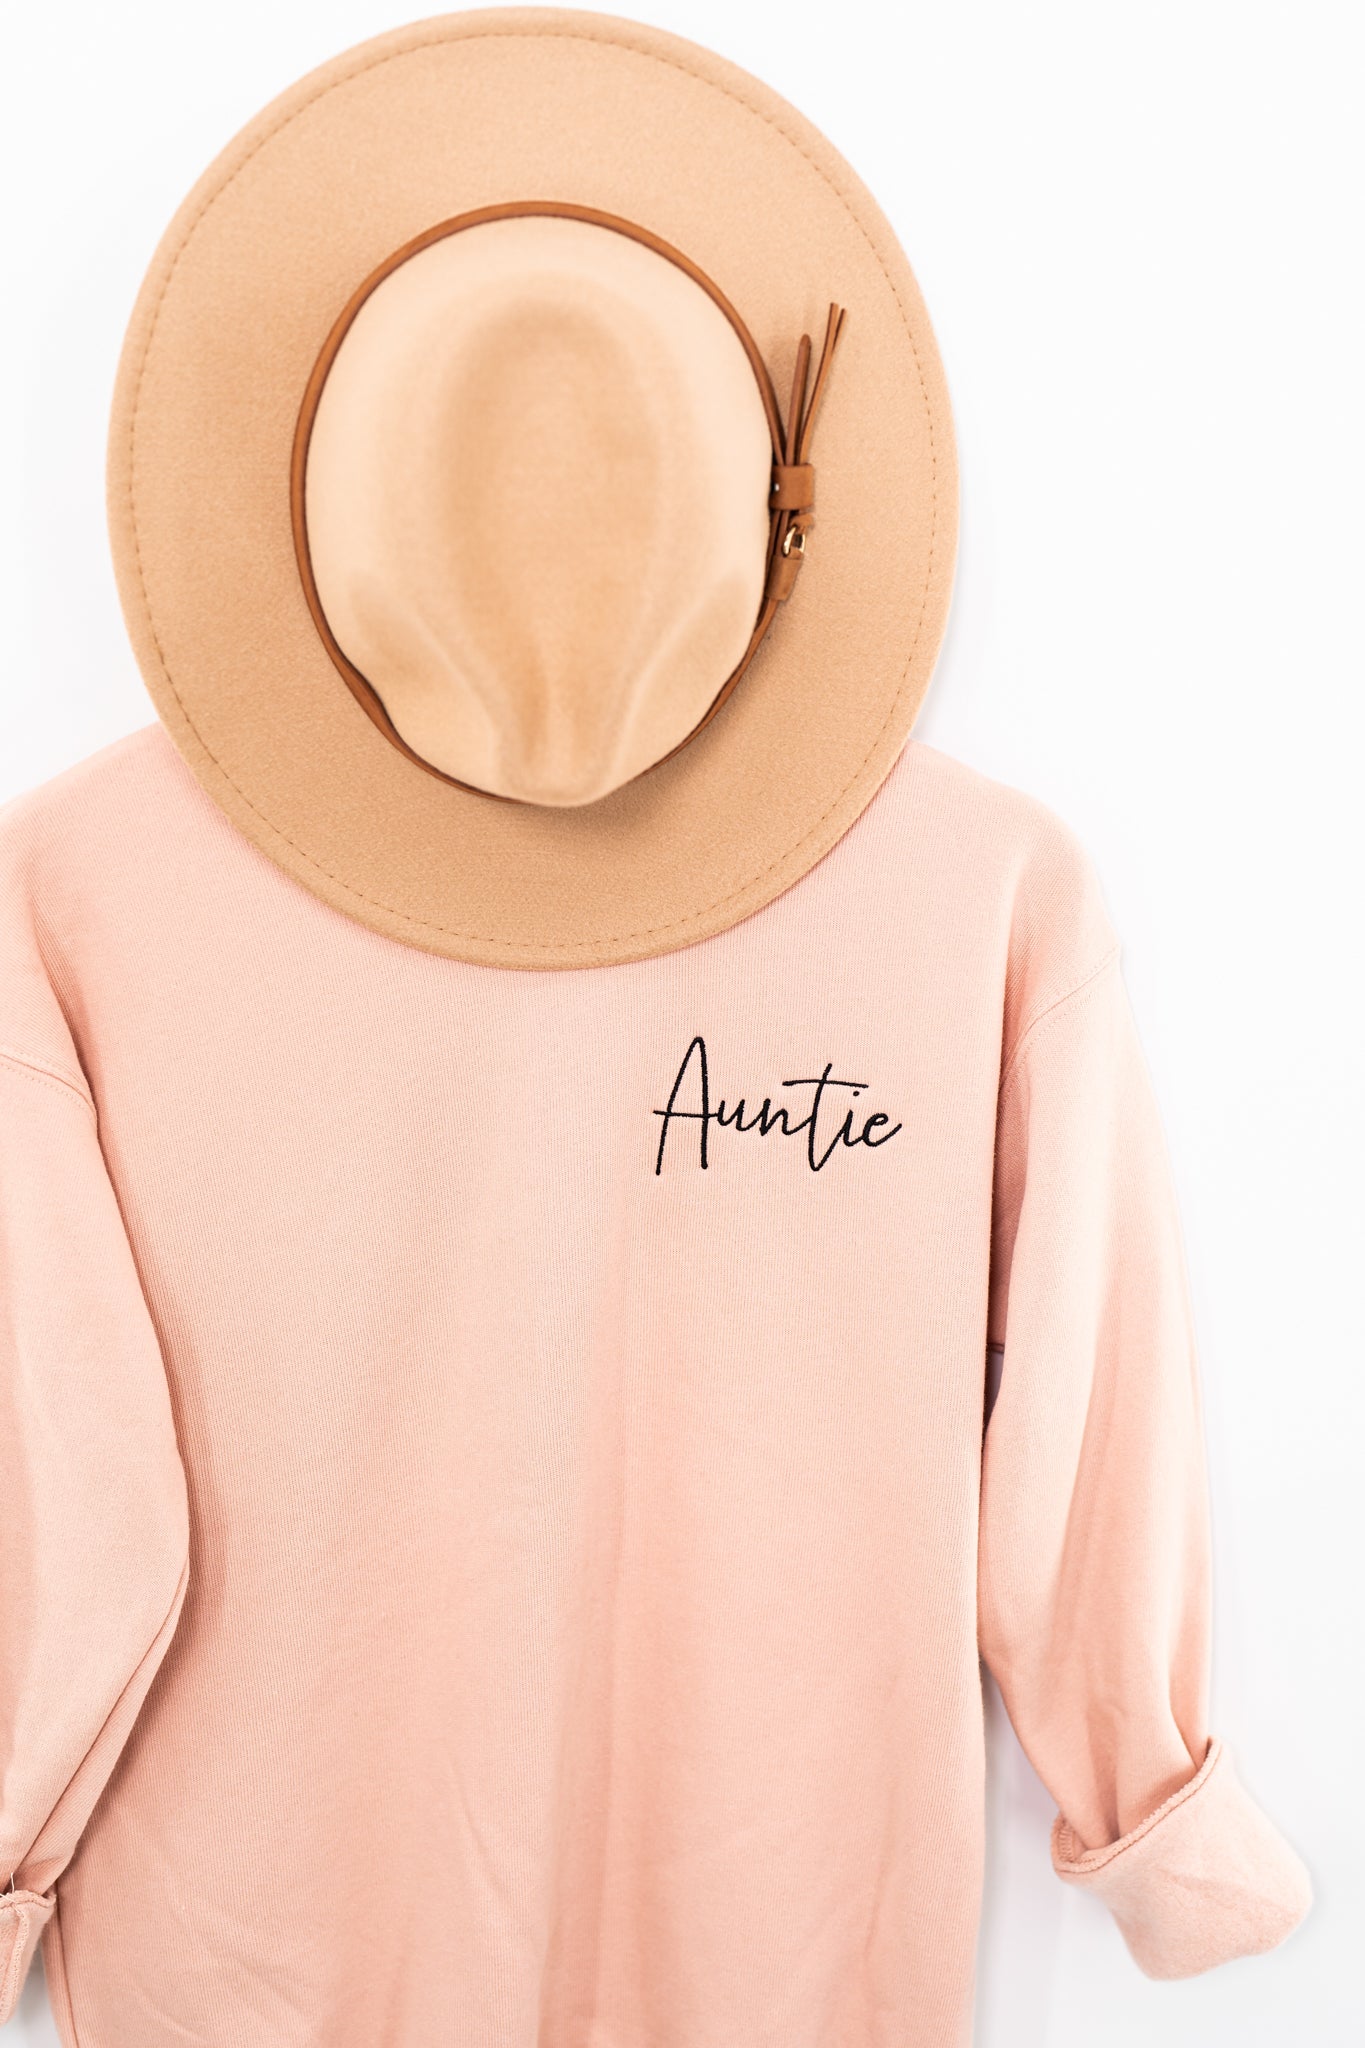 Auntie (Brook Script, Black) - Embroidered Sweatshirt (Peach)